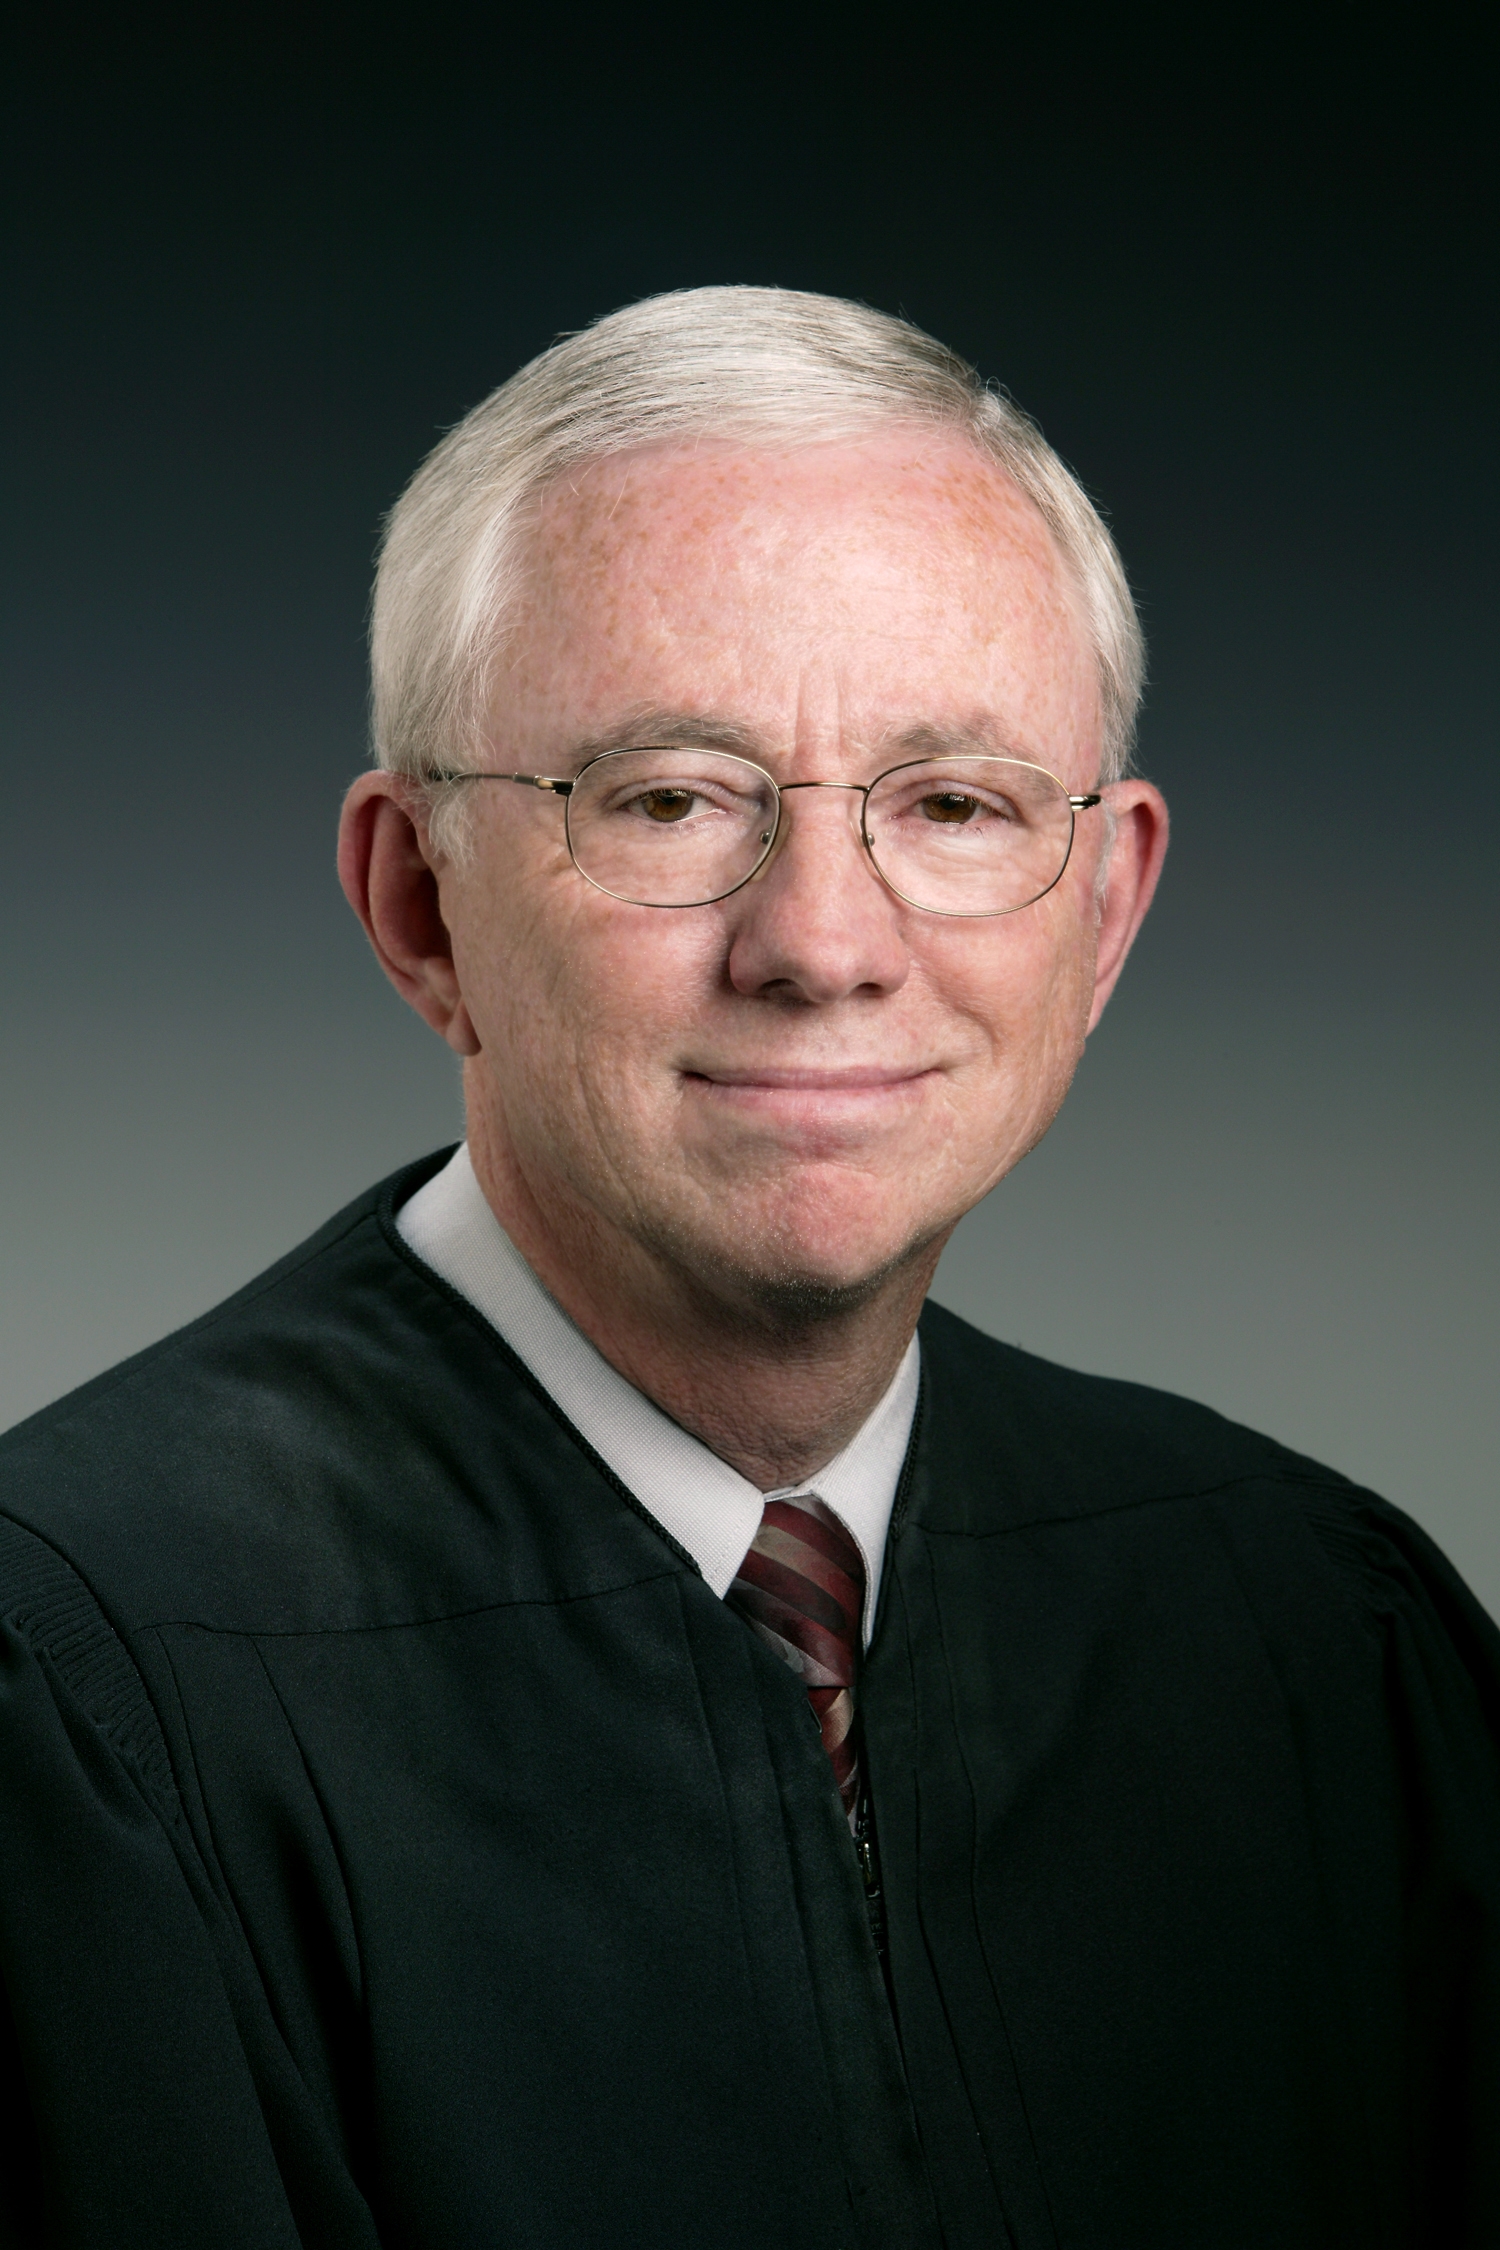 Judge William Hitchcock